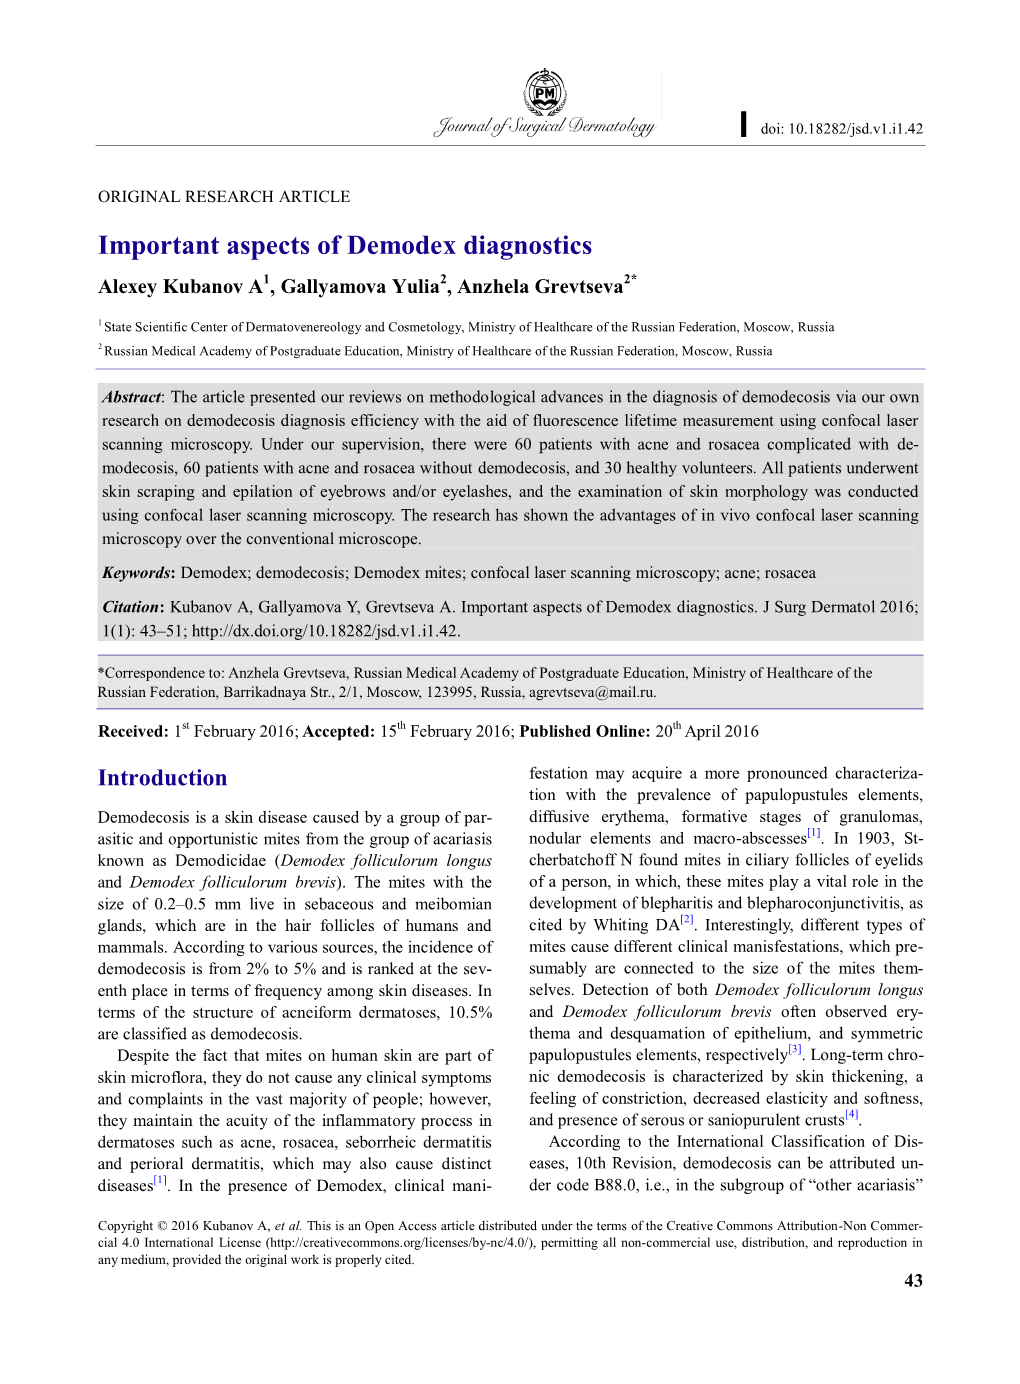 Important Aspects of Demodex Diagnostics Alexey Kubanov A1, Gallyamova Yulia2, Anzhela Grevtseva2*